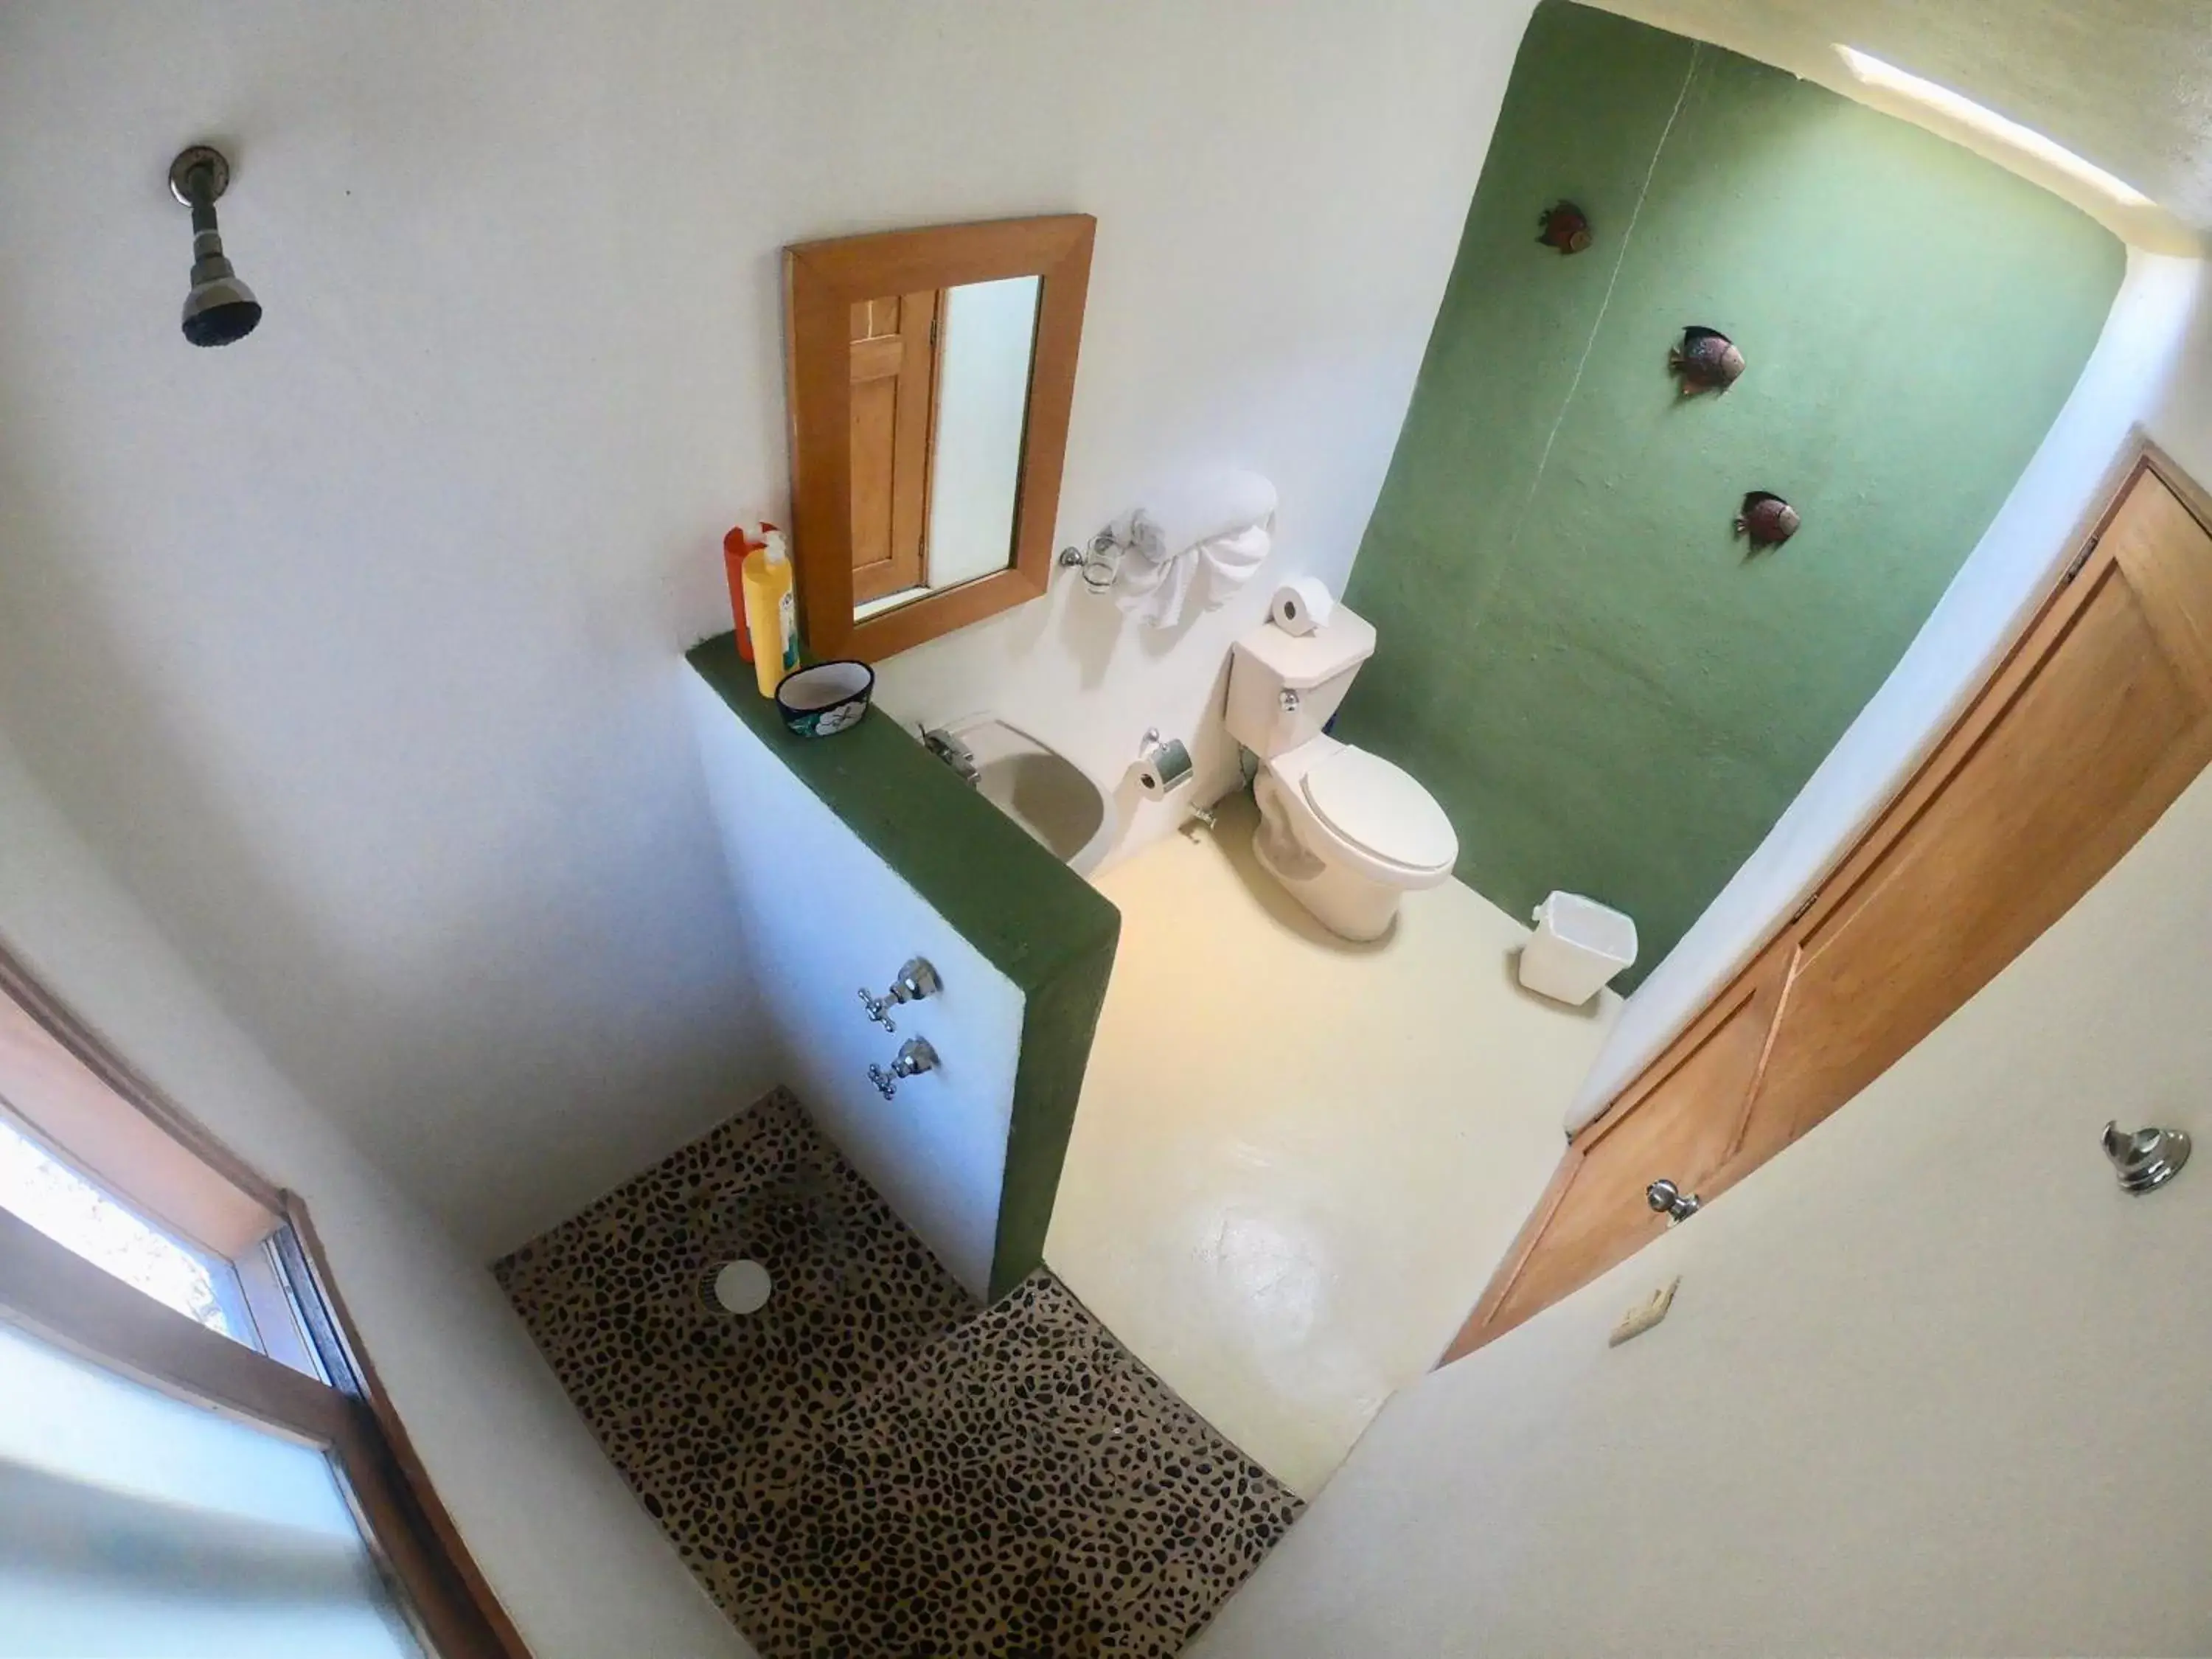 Bathroom in Mar y Sueños